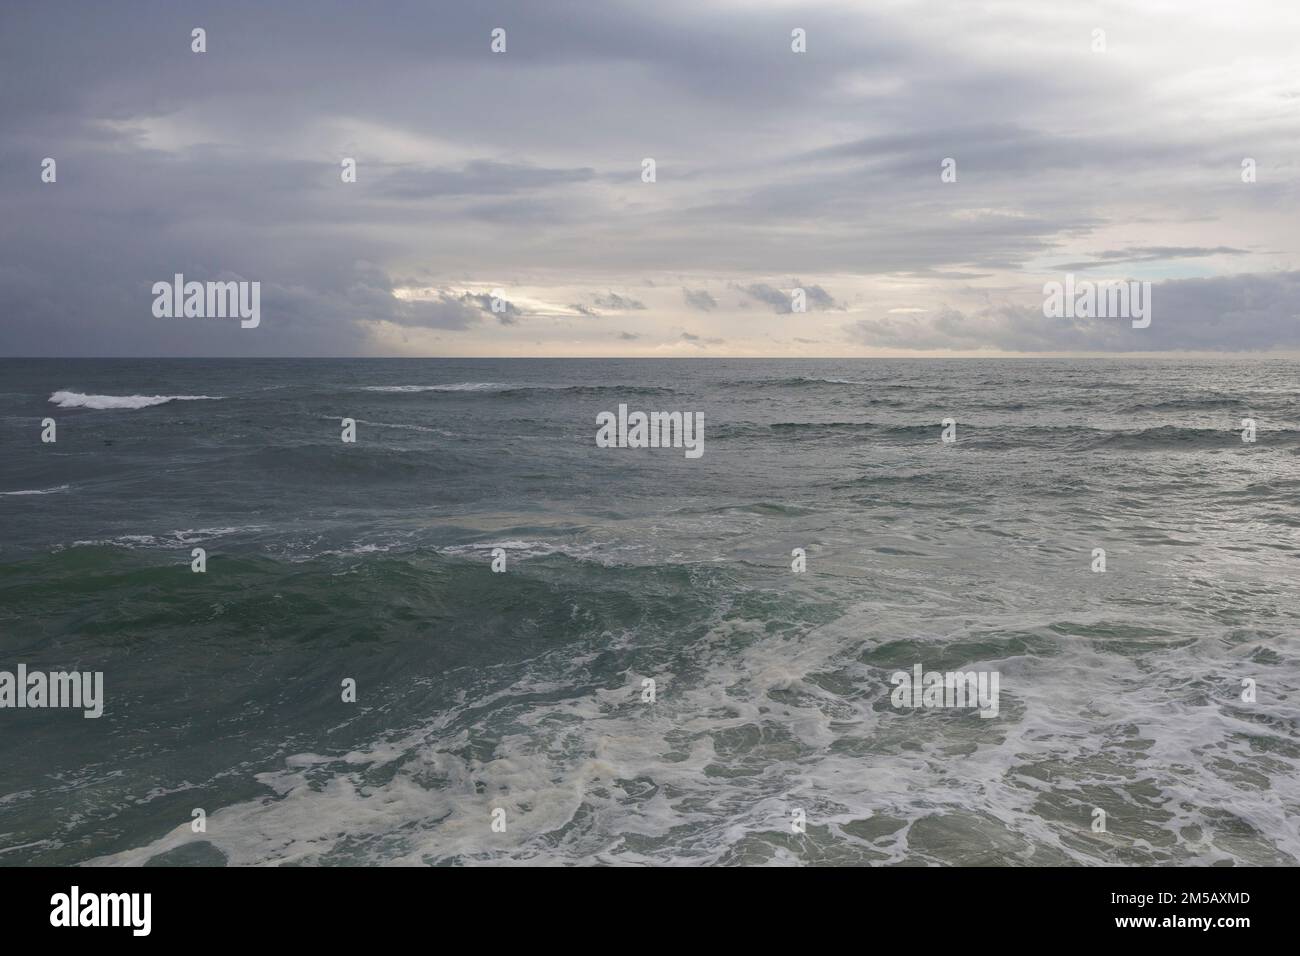 Mar minimalista y océano Atlántico - agua ondulada con olas y cielo nublado. Naturaleza y elementos naturales. Foto de stock